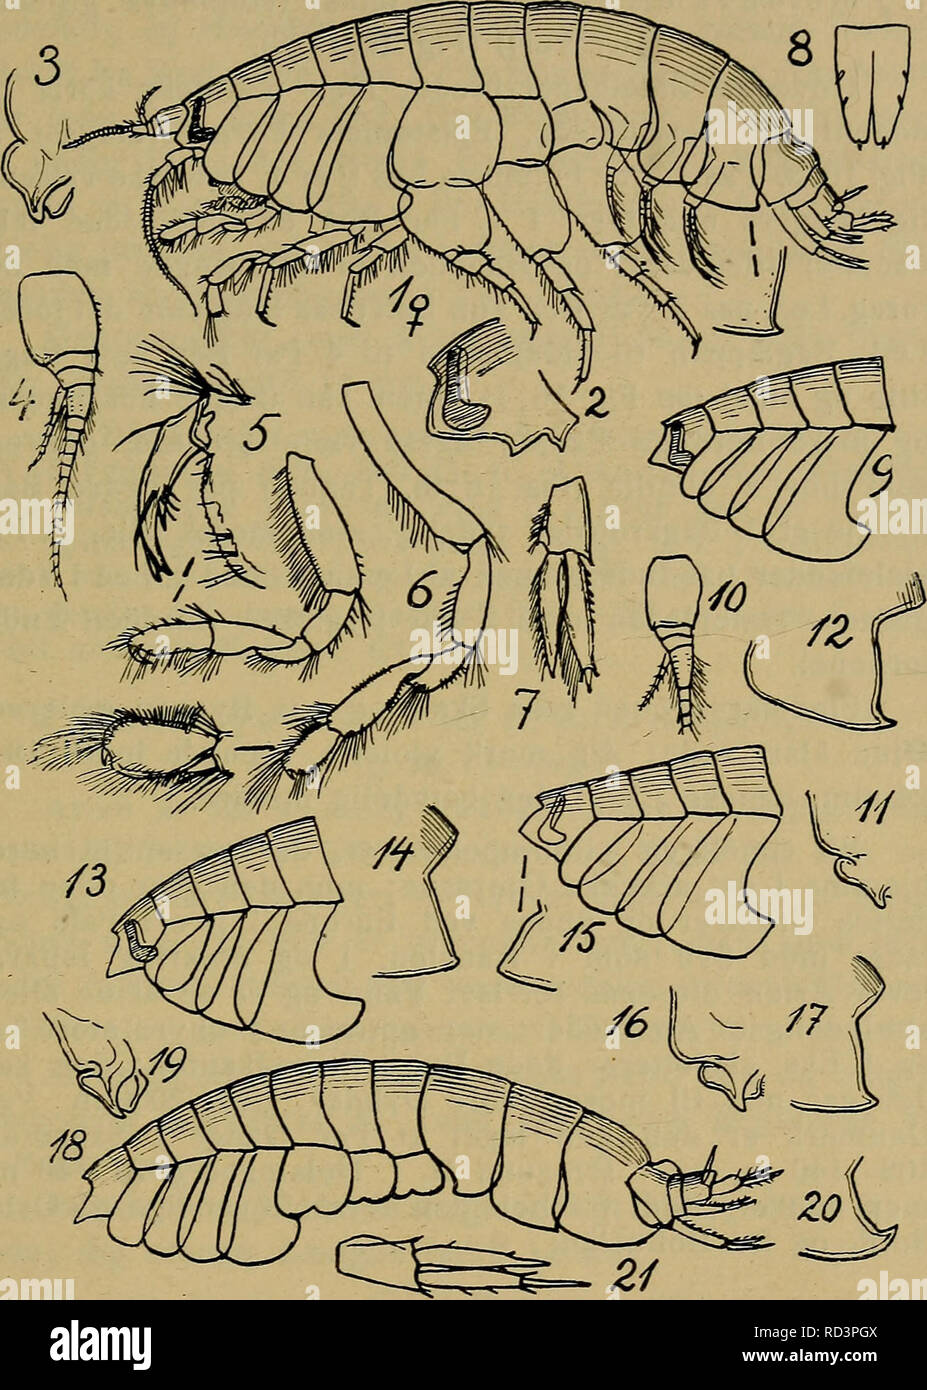 Danmarks fauna; illustrerede haandbøger over den danske dyreverden... 91. Fig. 16. Tmetonyx. 1—8: T. Overlæbe med Epi- stom, 1. Følehorn, to første Par Ben, 3. Halefod, 9—12: